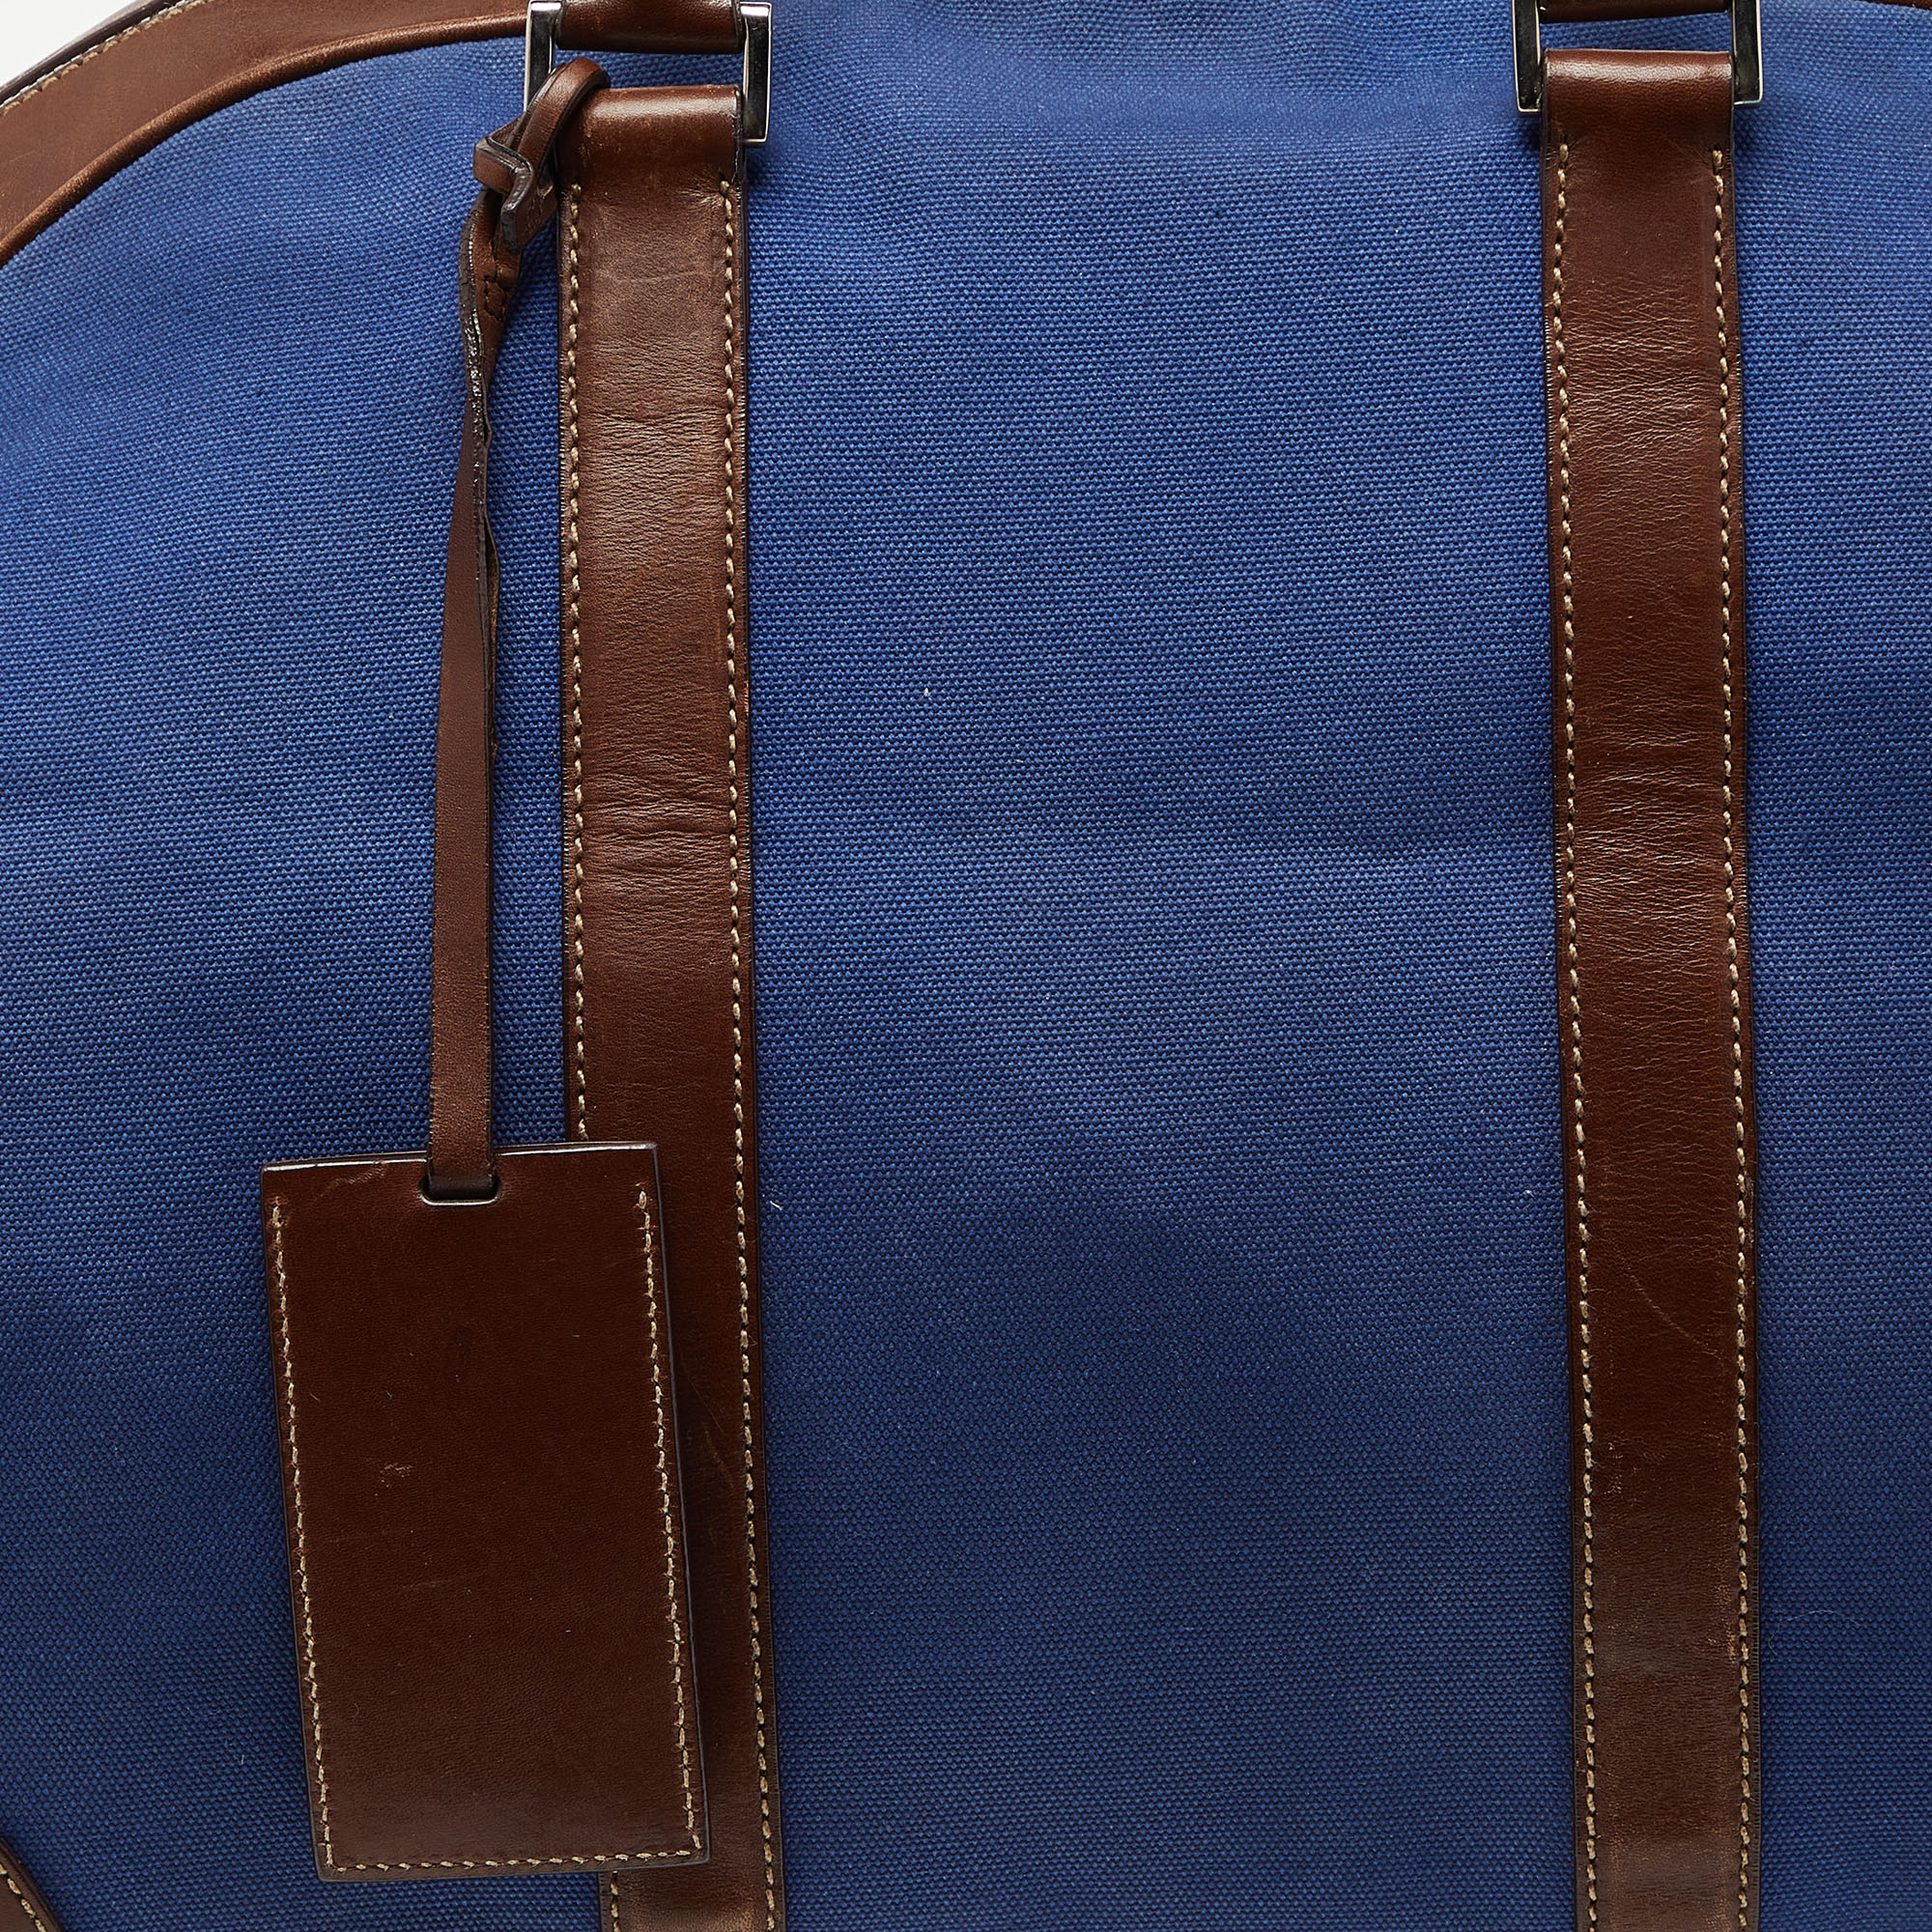 Prada Blue/Brown Canvas And Leather Weekender Bag